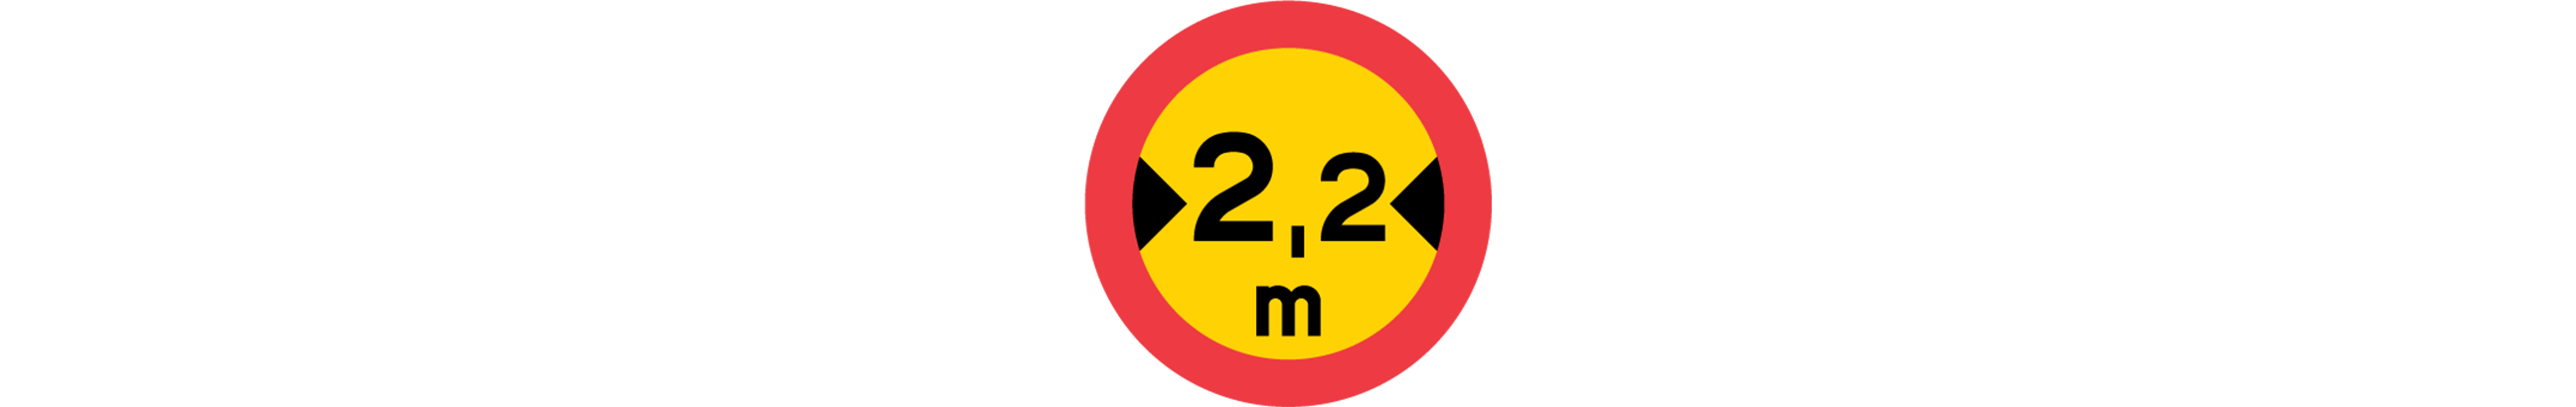 vägmärke för begränsad fordonsbredd